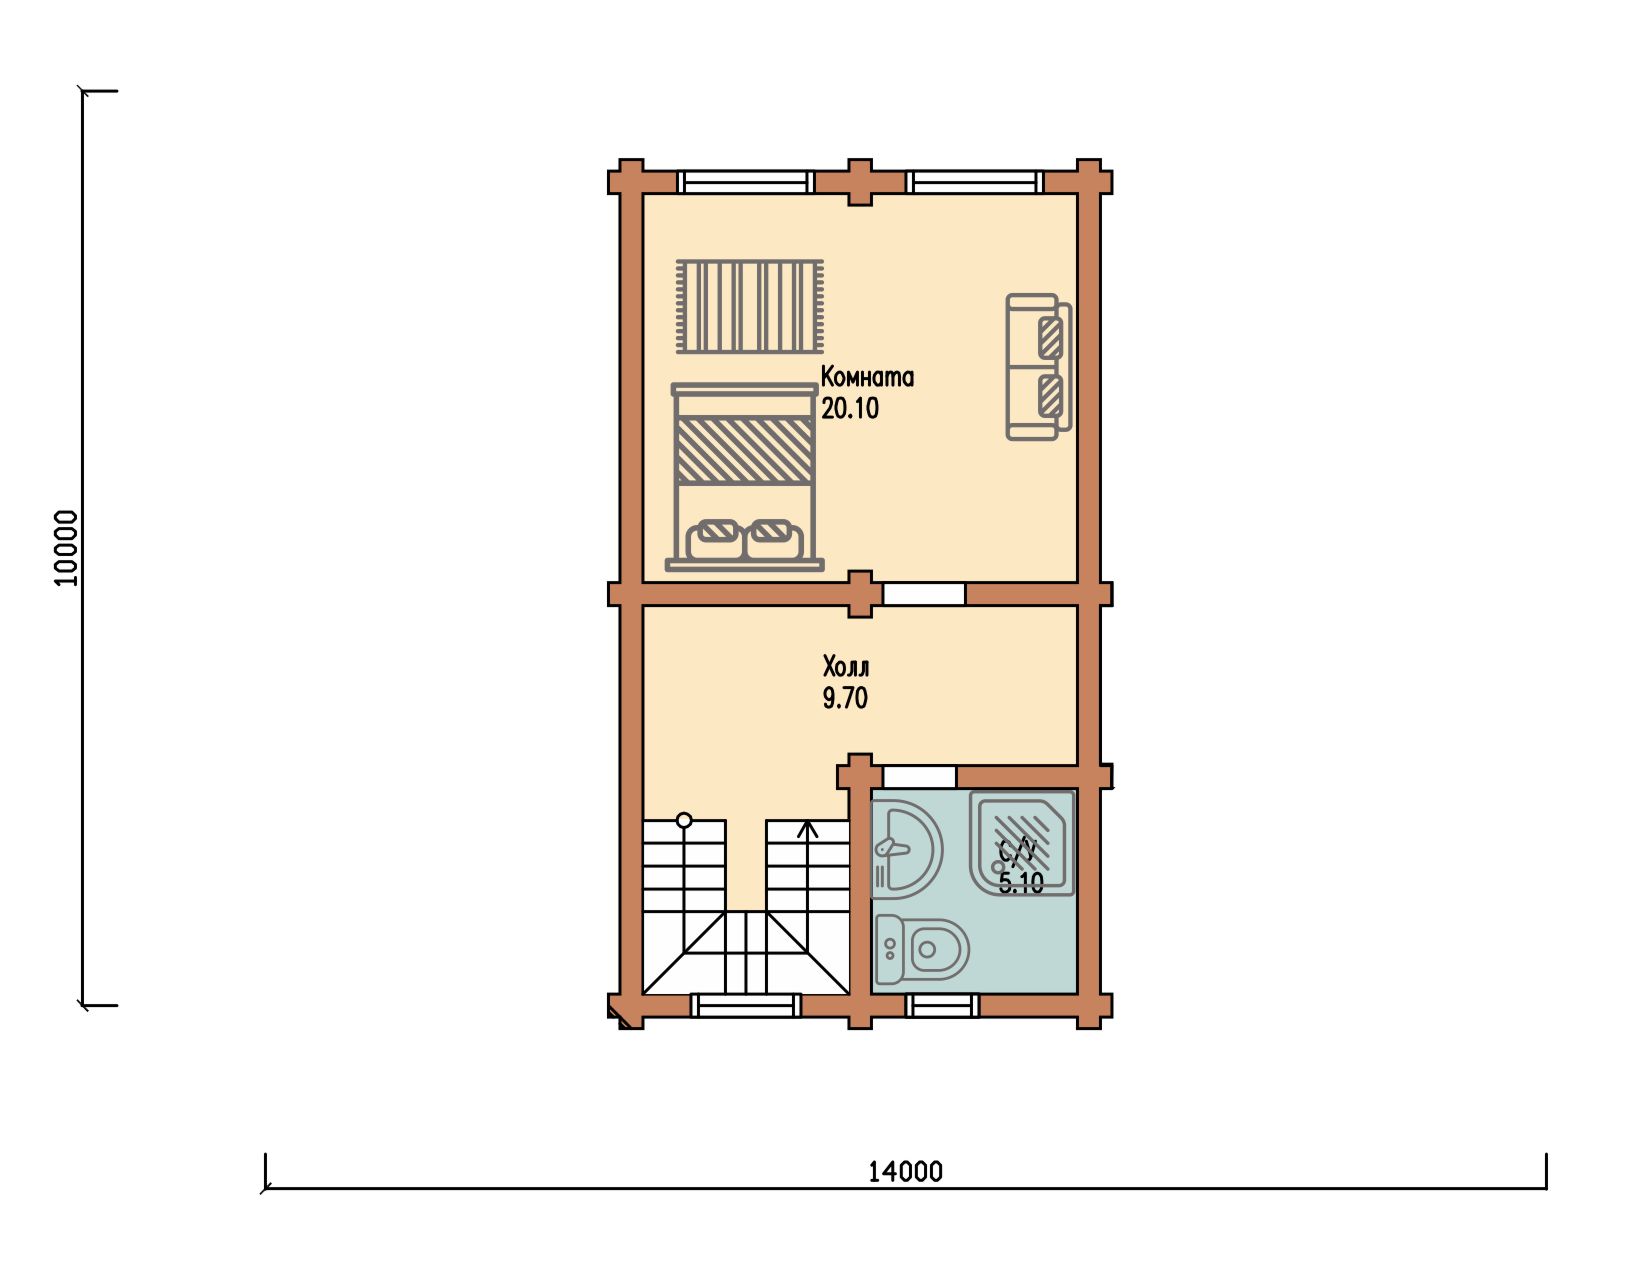 Проект одноэтажного деревянного  дома с мансардой и террасой  из бруса – ДПБ 313